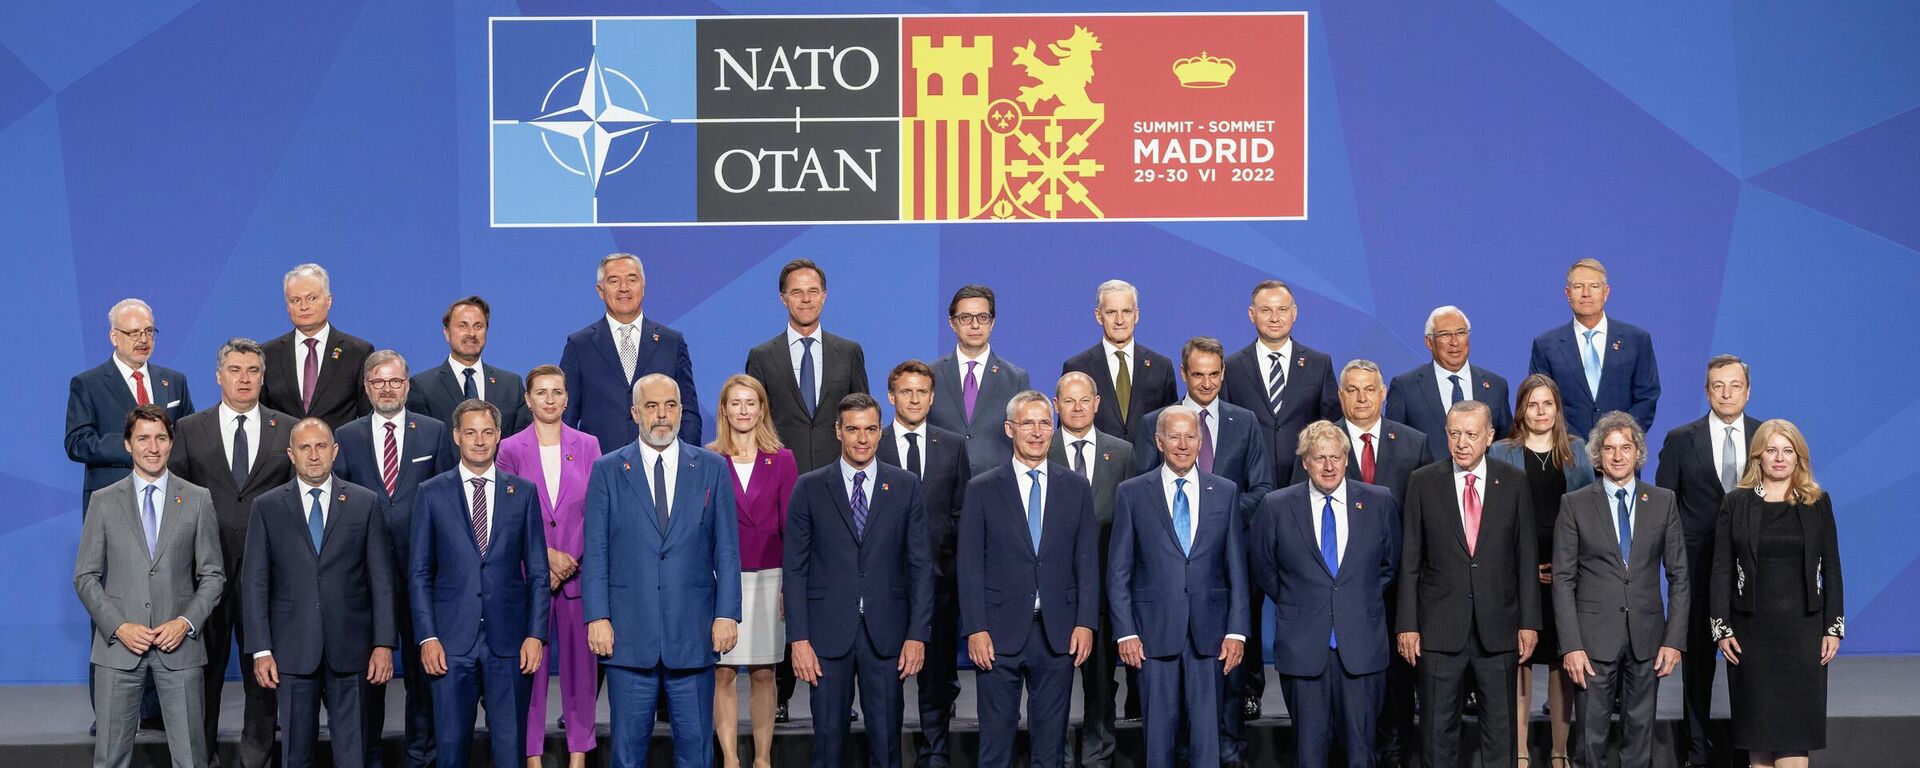 Líderes de la OTAN en Madrid  - Sputnik Mundo, 1920, 02.09.2022